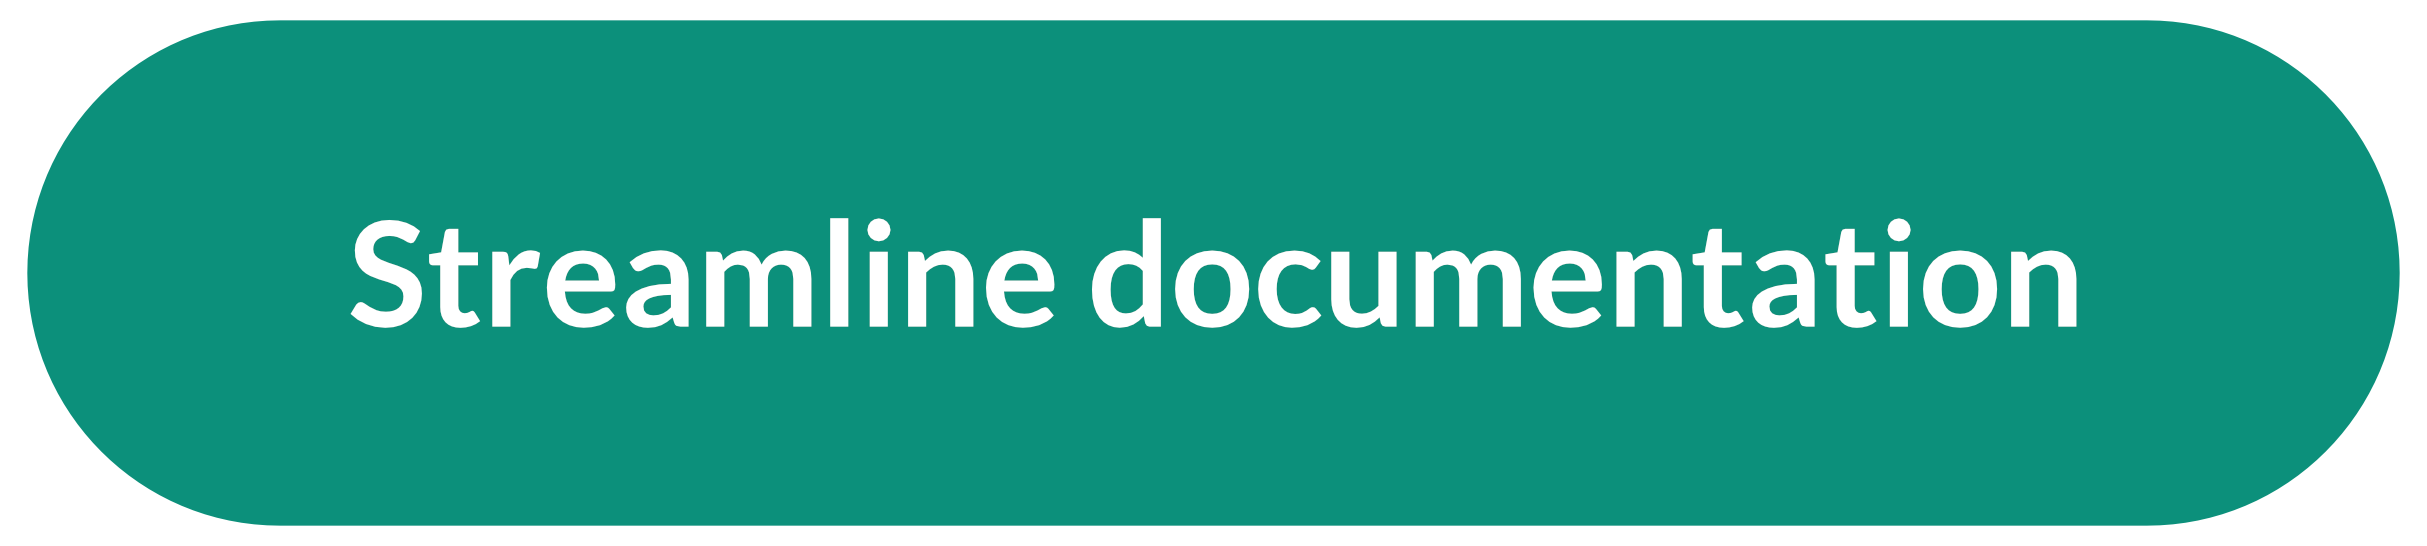 Streamline documentation